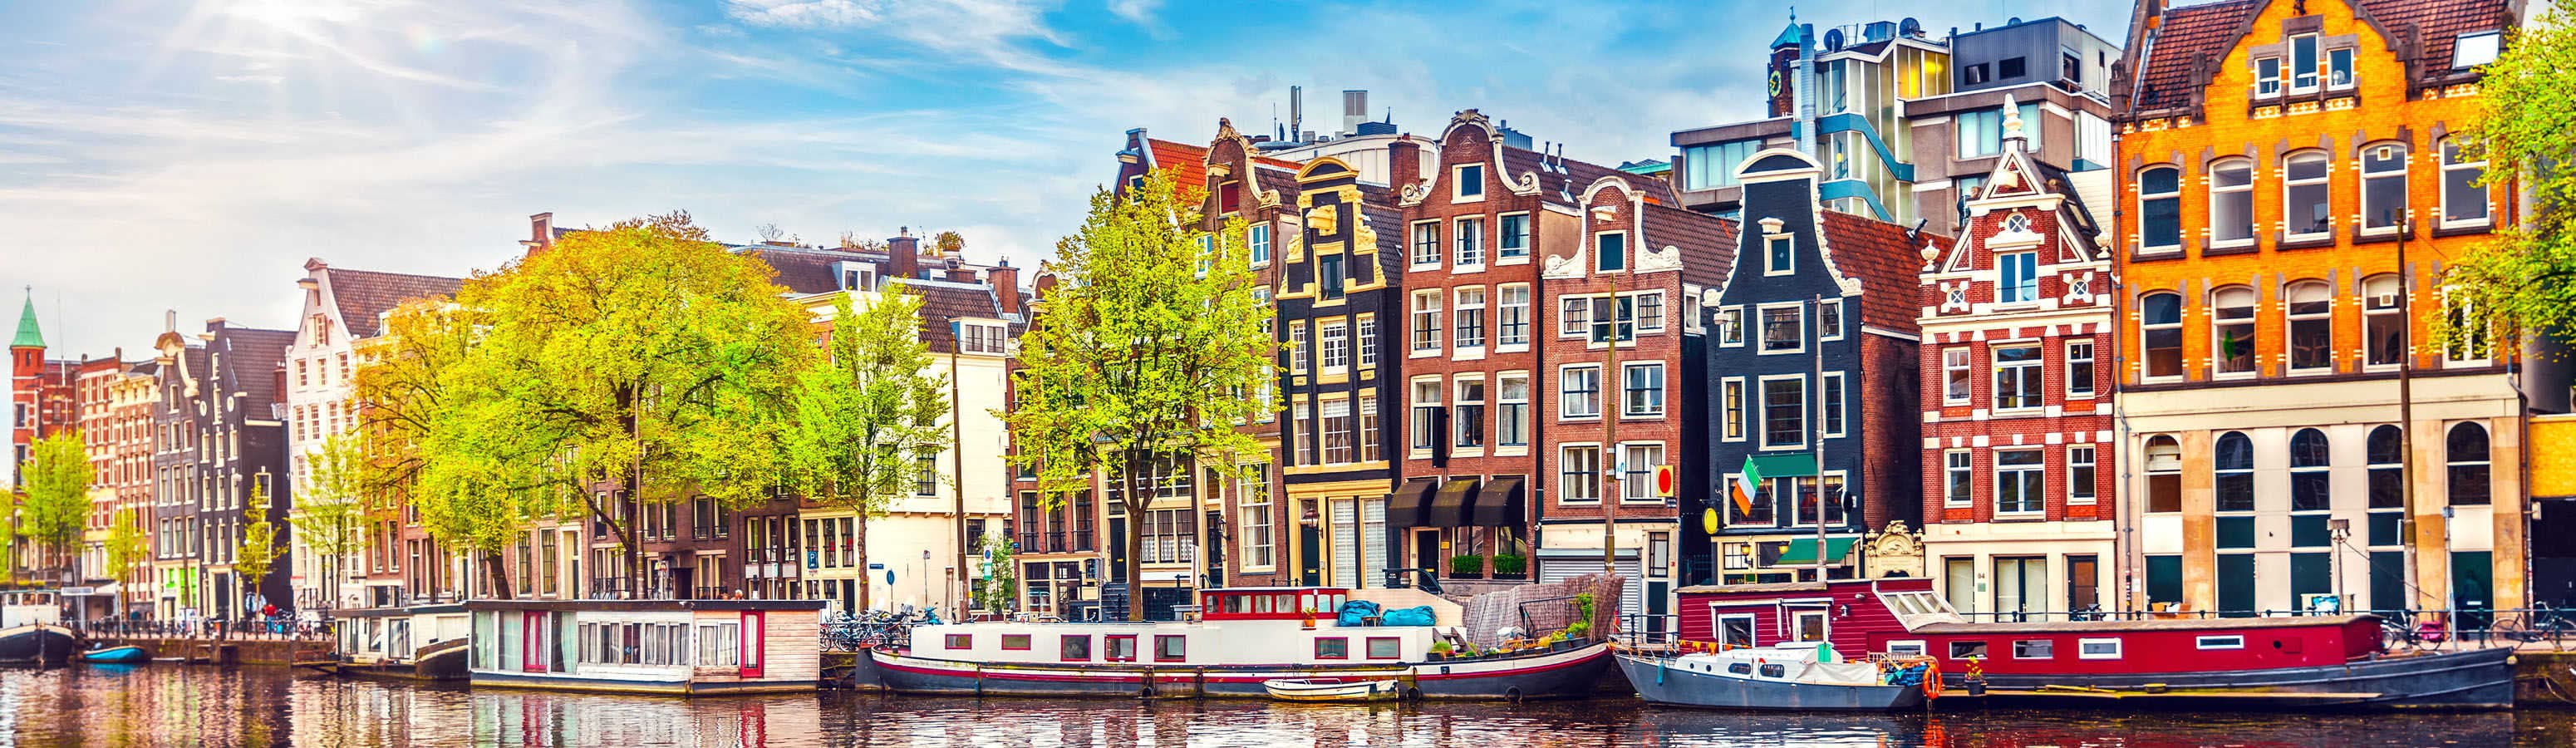 Romantikus Amszterdam, kerékpárosok, kávéházak és tulipánok városa